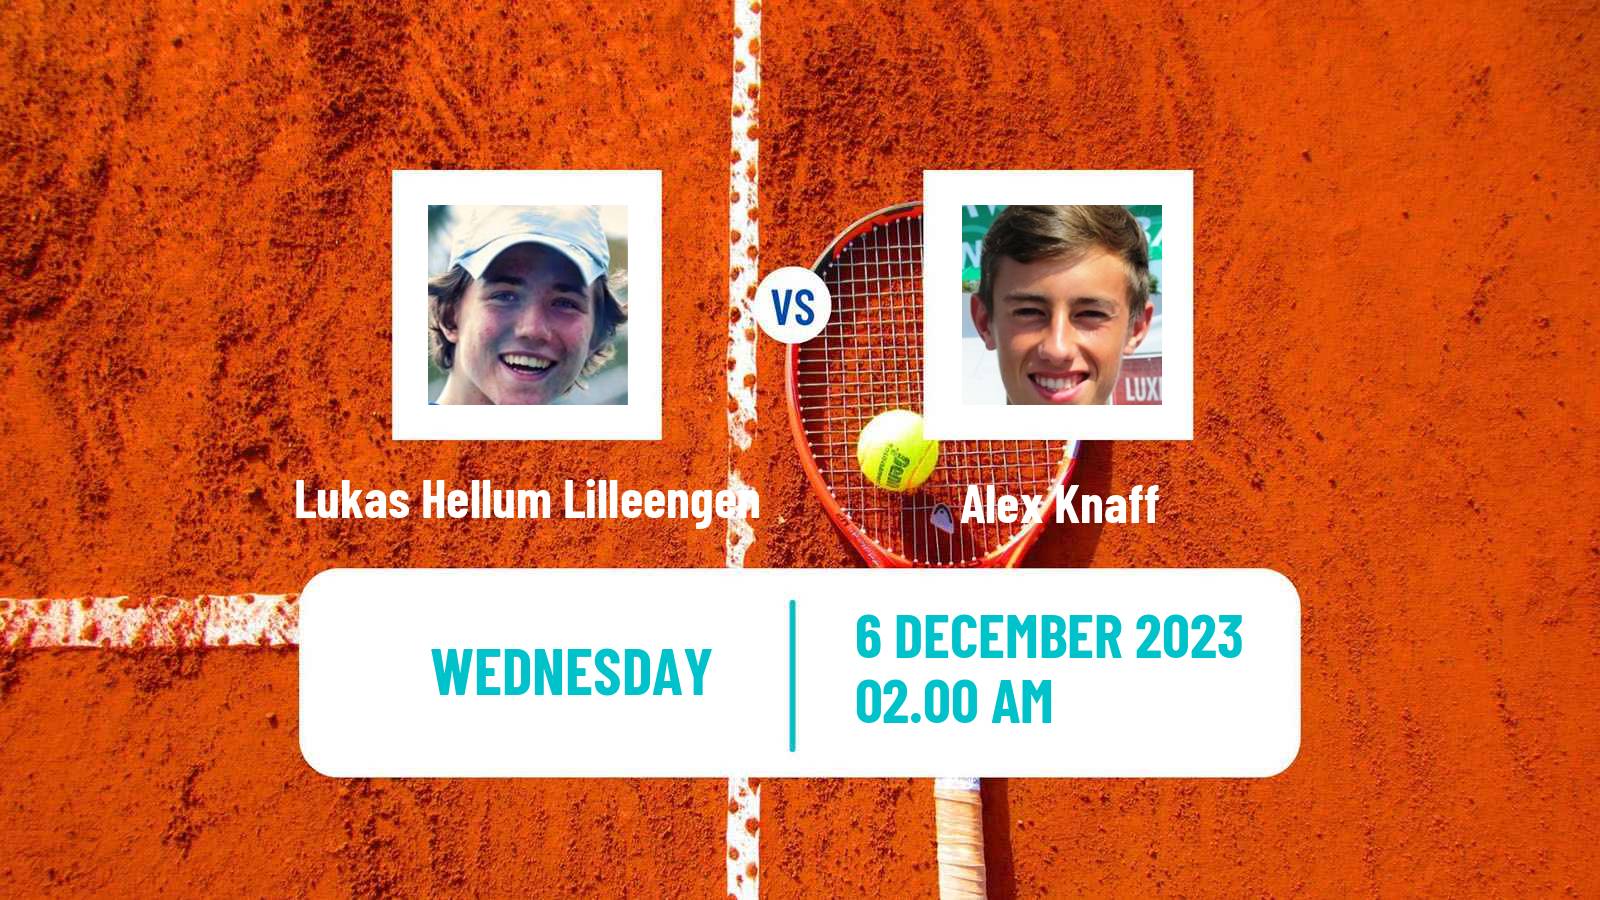 Tennis ITF M15 Zahra 2 Men 2023 Lukas Hellum Lilleengen - Alex Knaff